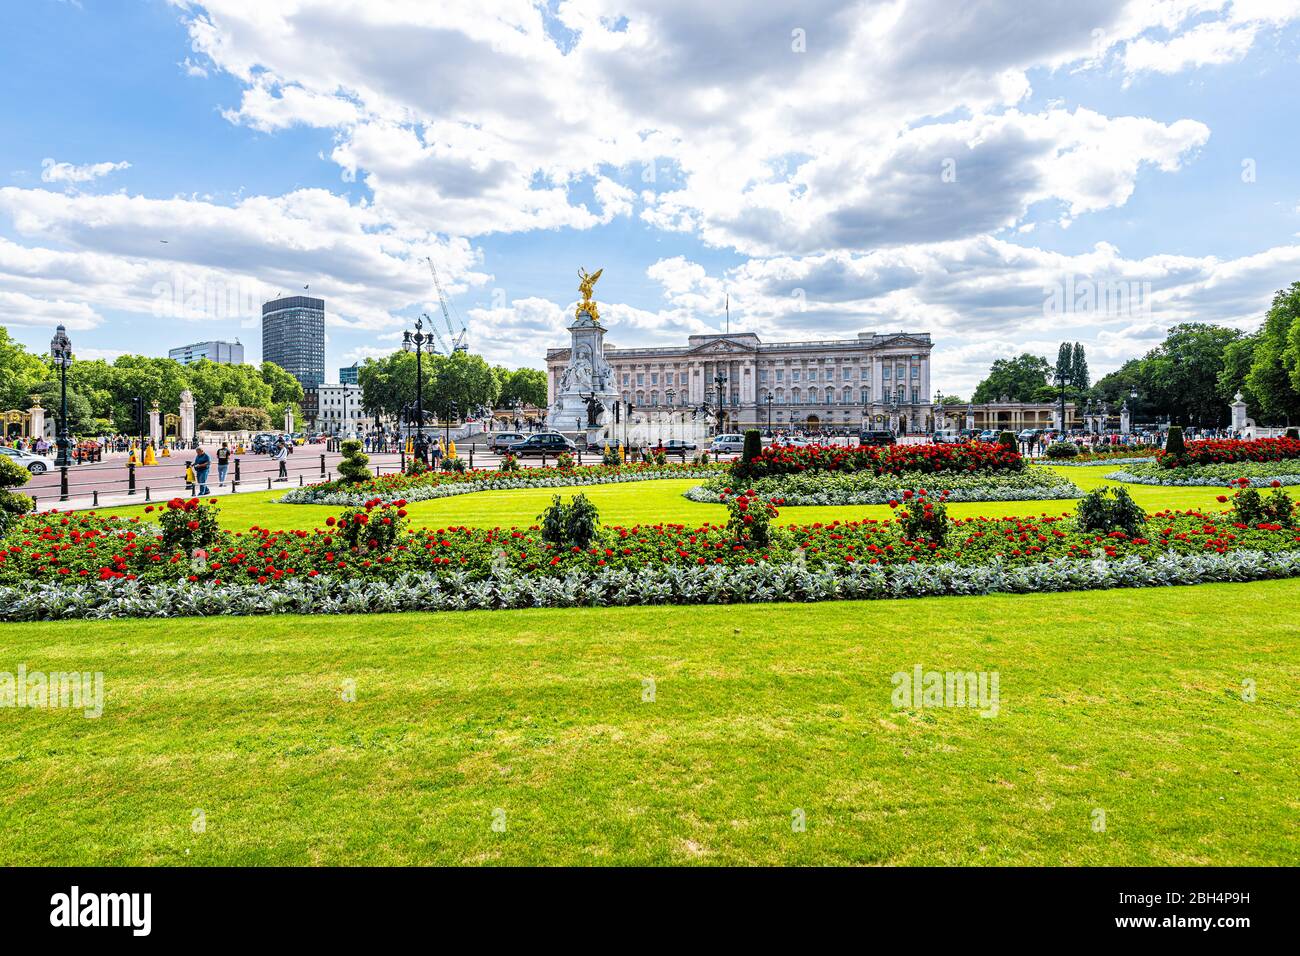 Londres, Royaume-Uni - 21 juin 2018 : Buckingham Palace St James Park en été avec jardin de brousse et monument en herbe verte Banque D'Images